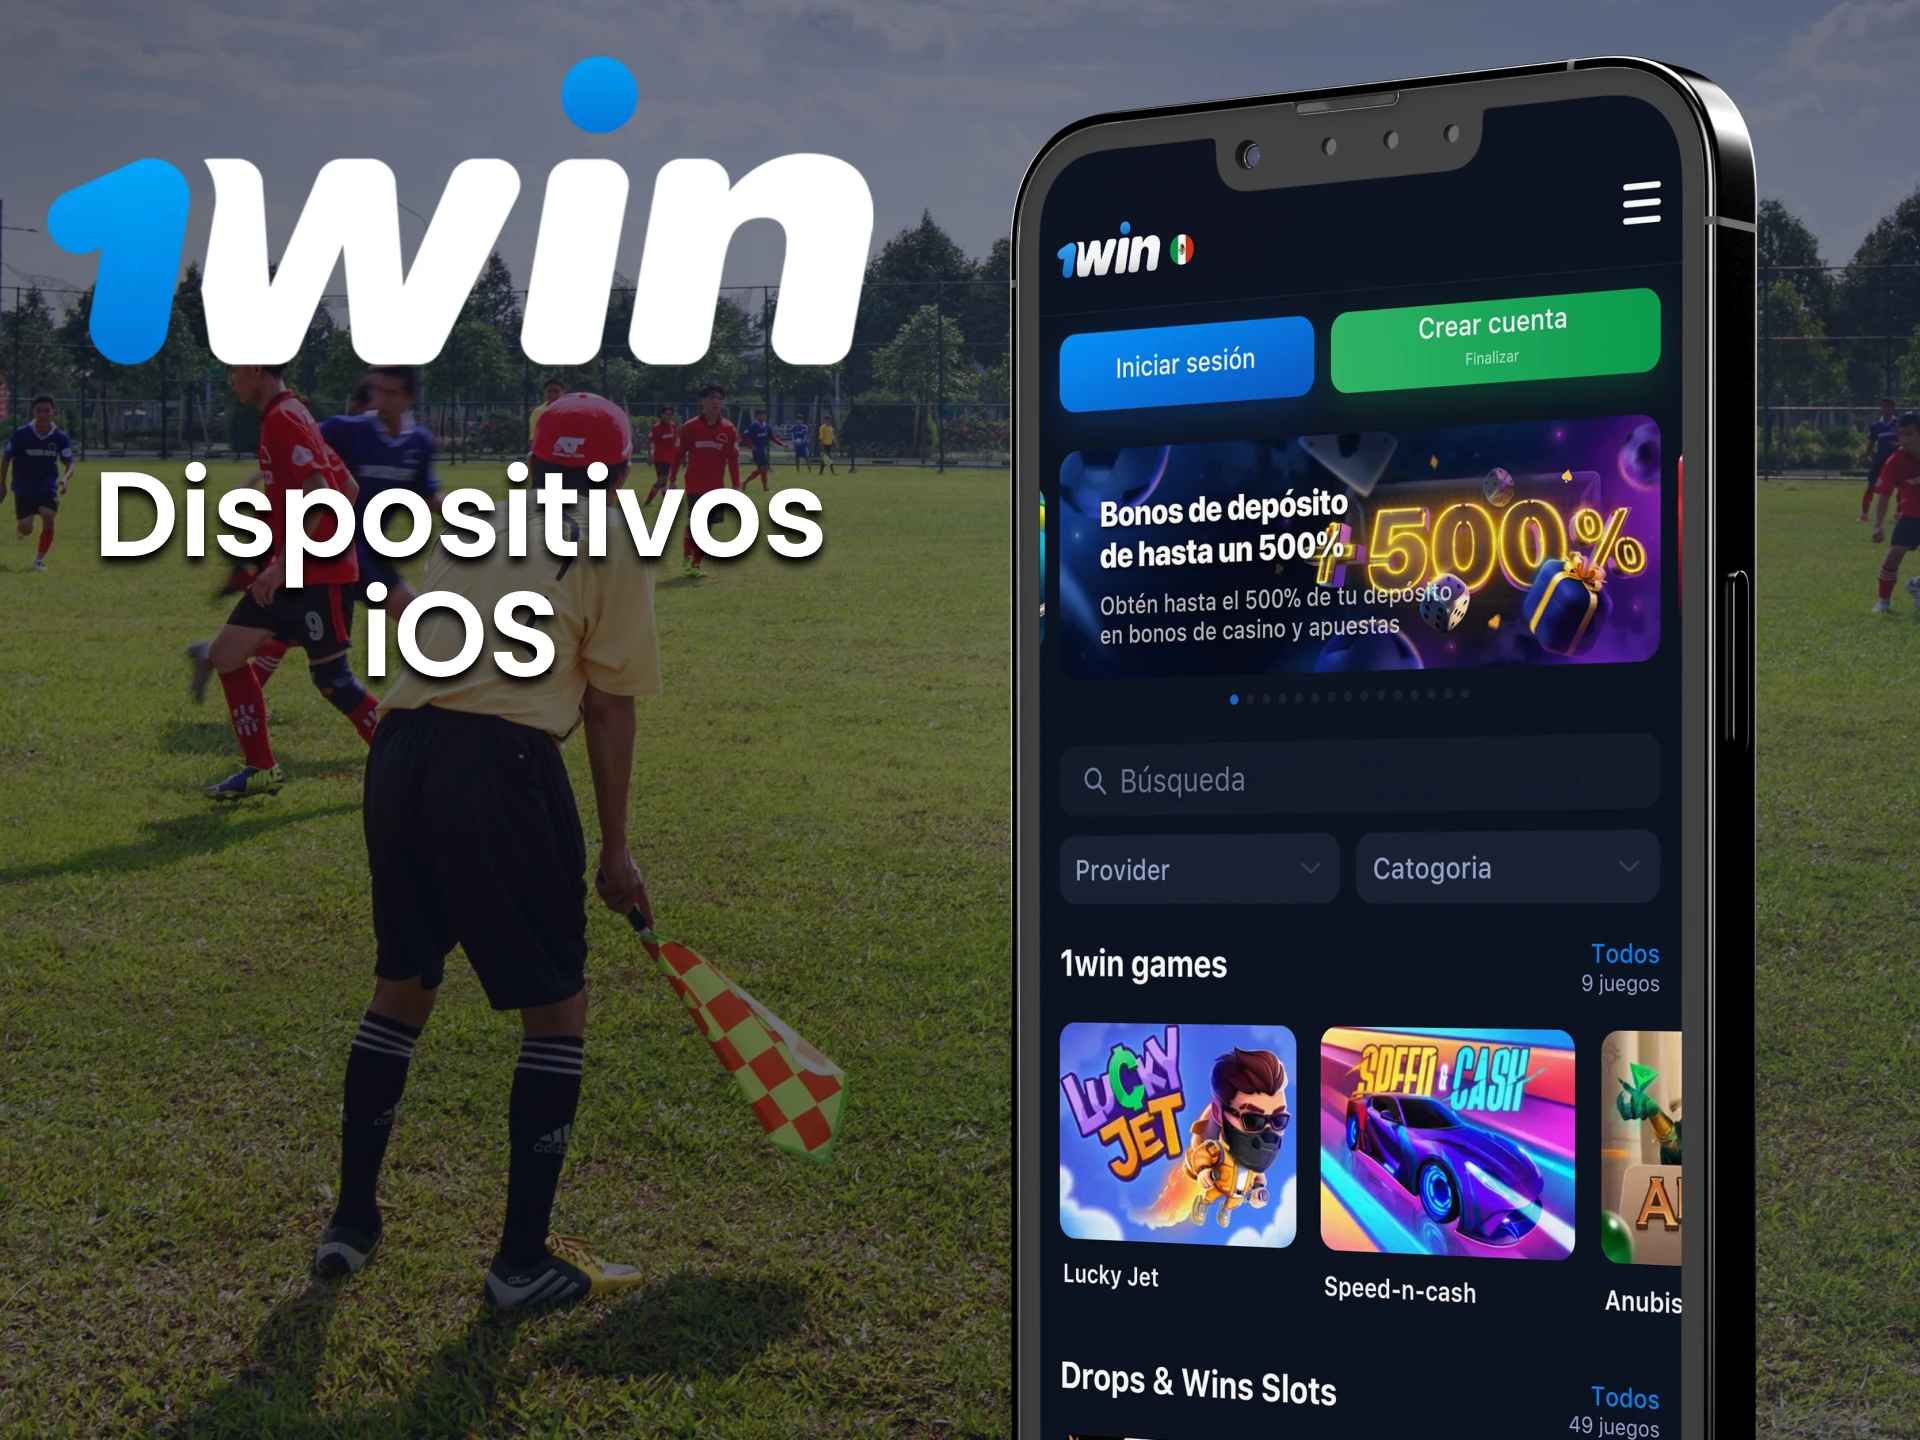 Dispositivos iOS compatibles con la app 1win.